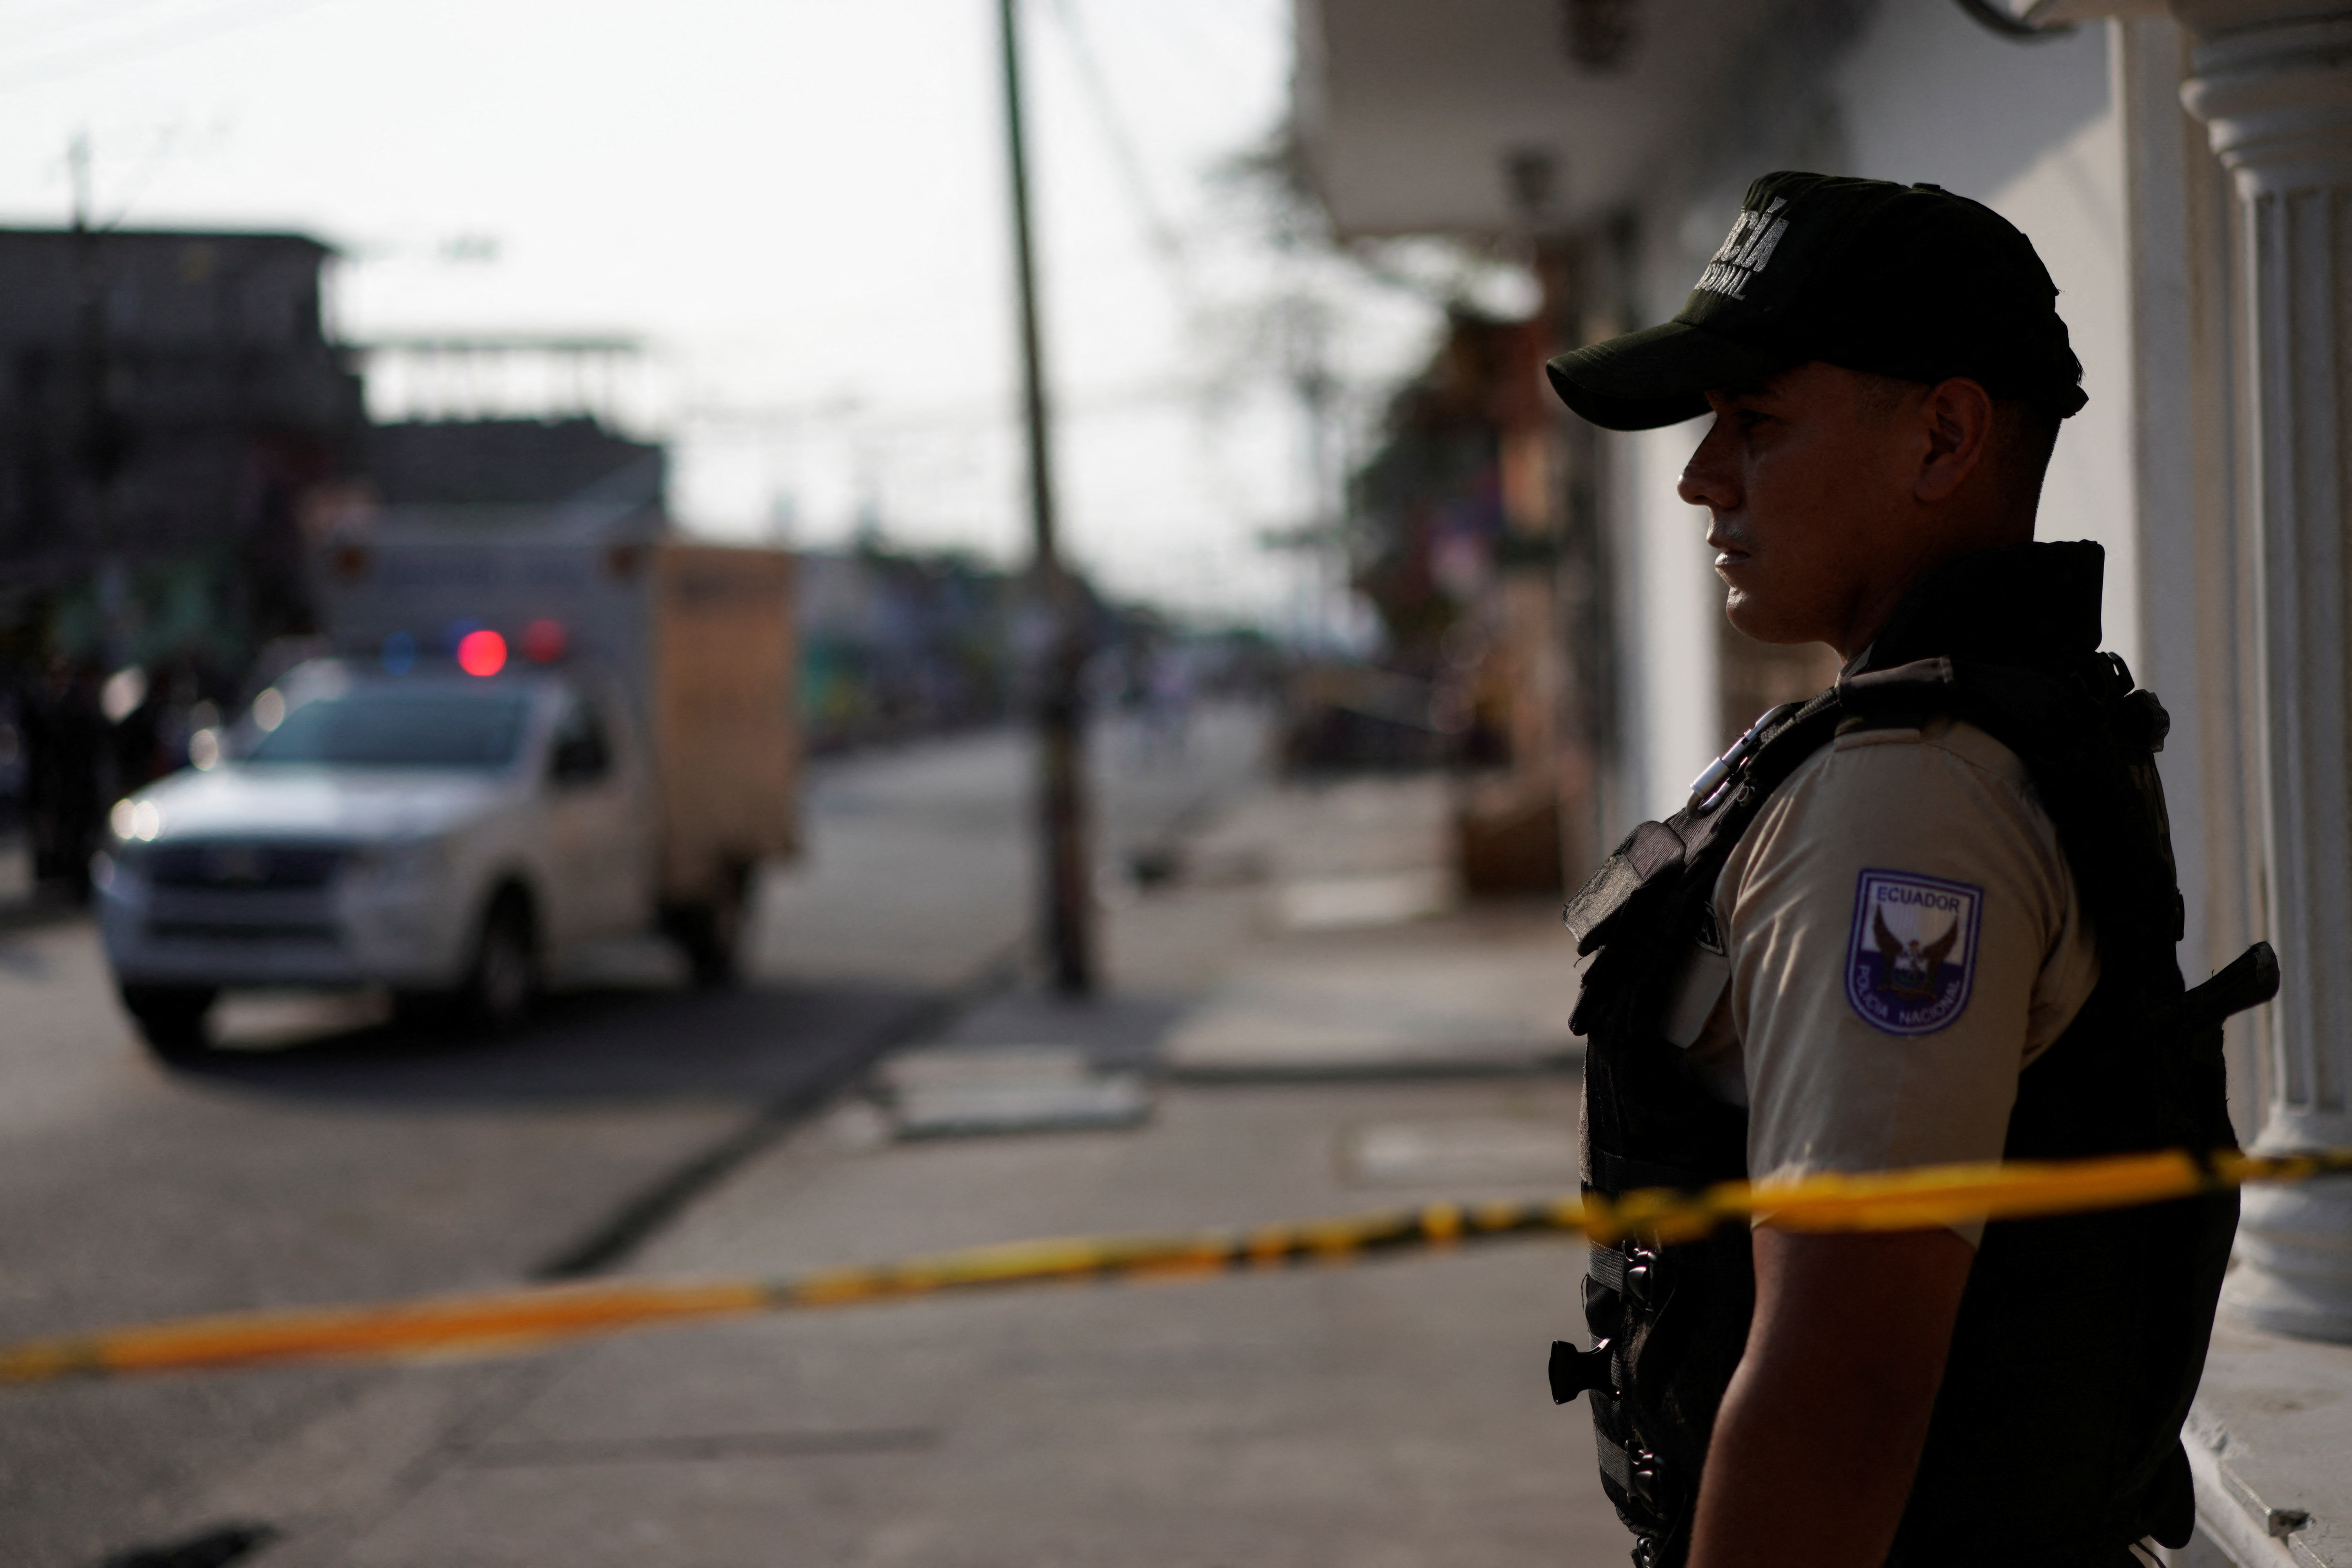 Guayaquil, Durán y Samborondón se han convertido en ciudades clave para la operación de los traficantes de droga. (REUTERS/Santiago Arcos)